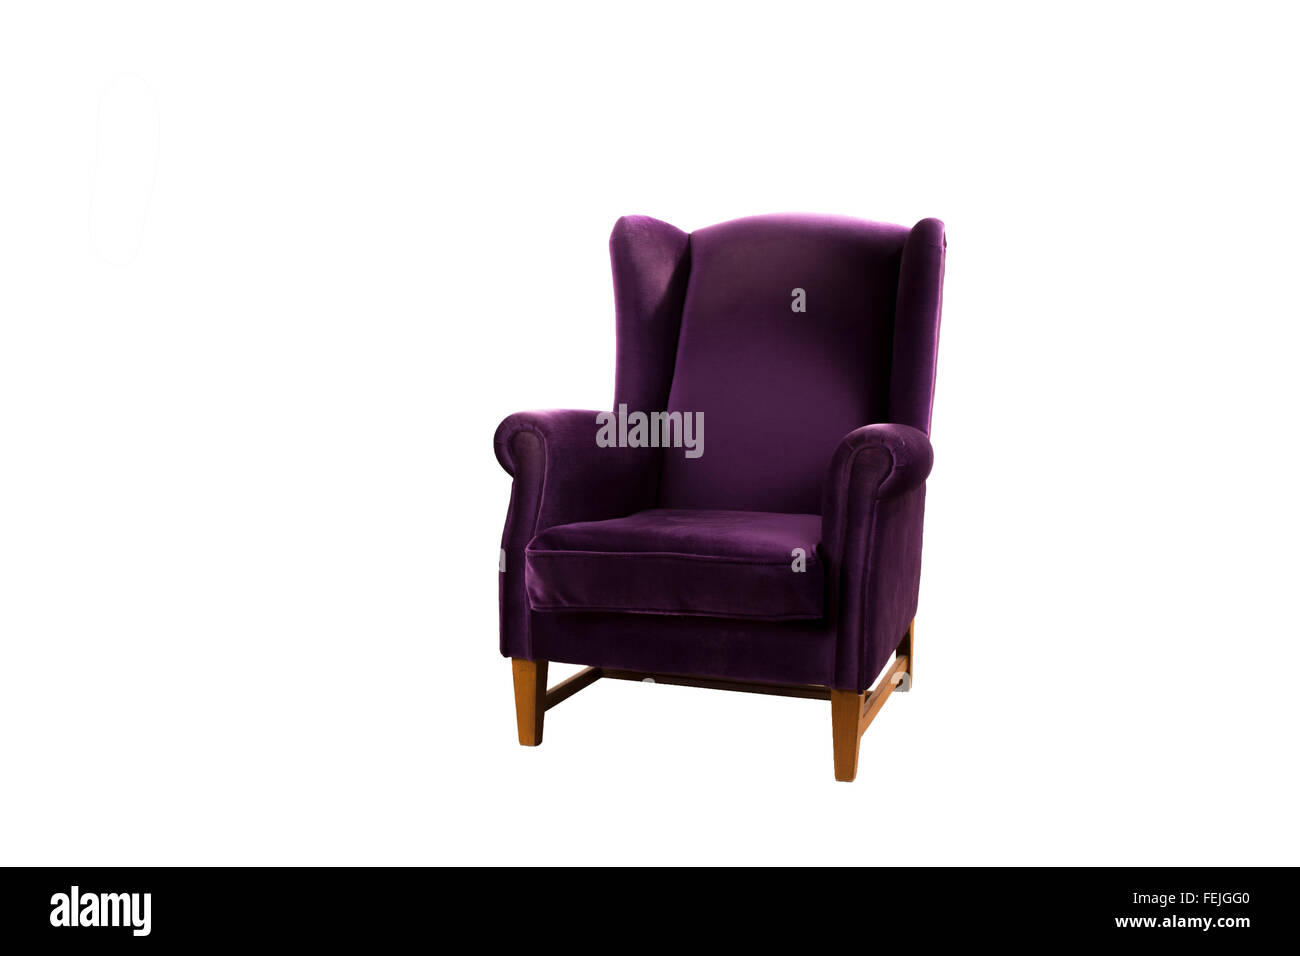 Poltrona viola isolato su sfondo bianco Foto Stock